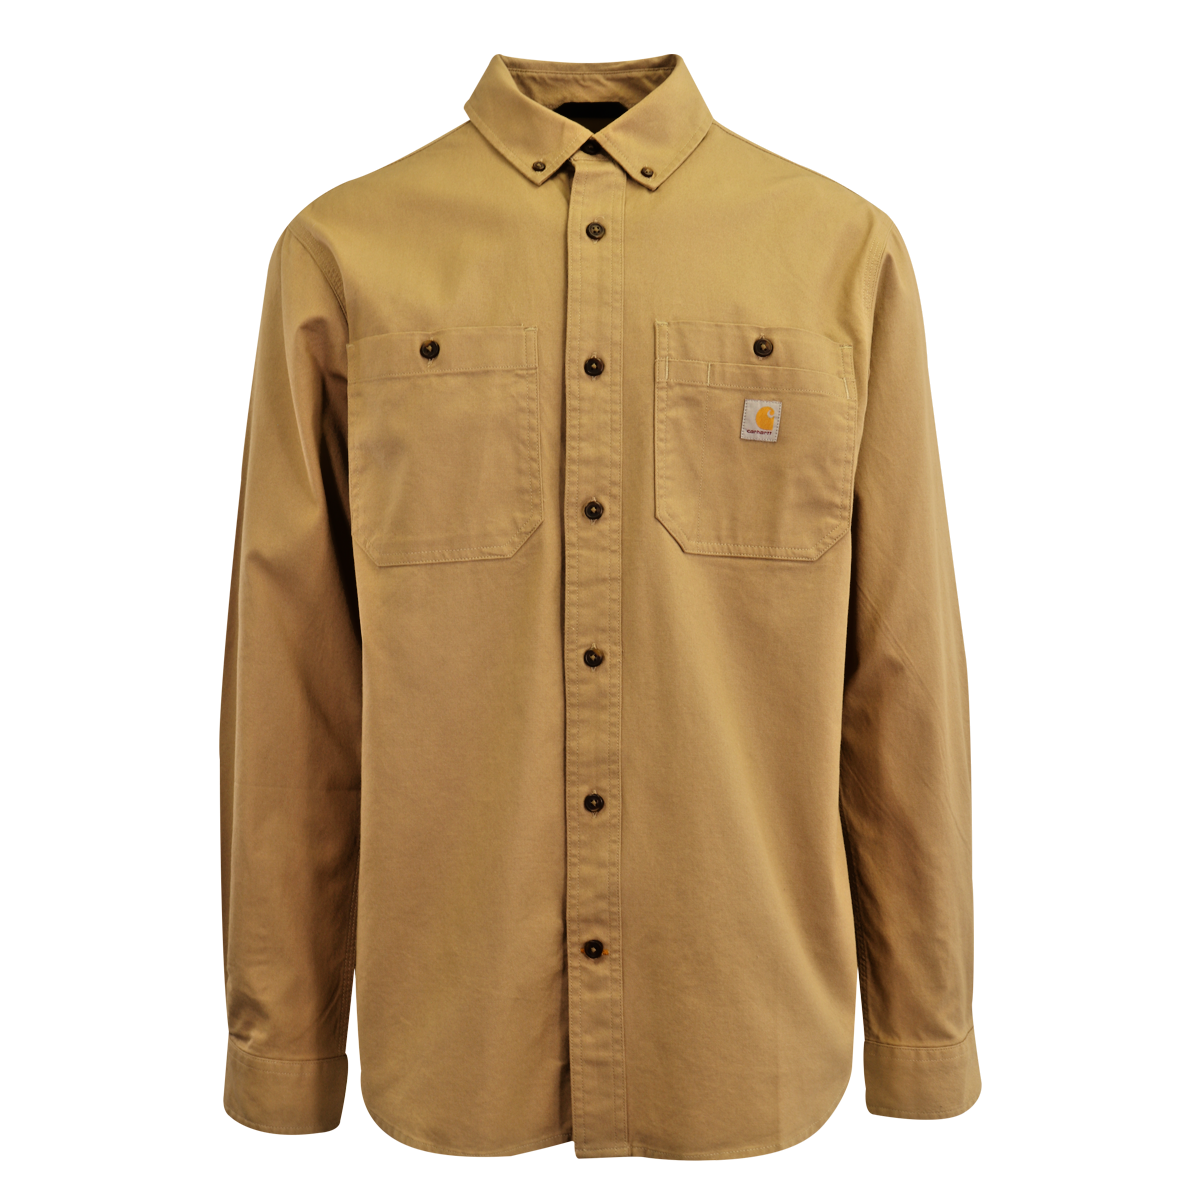 Carhartt Men's Flannel Shirt Rugged Flex Tan Long Sleeve (327)